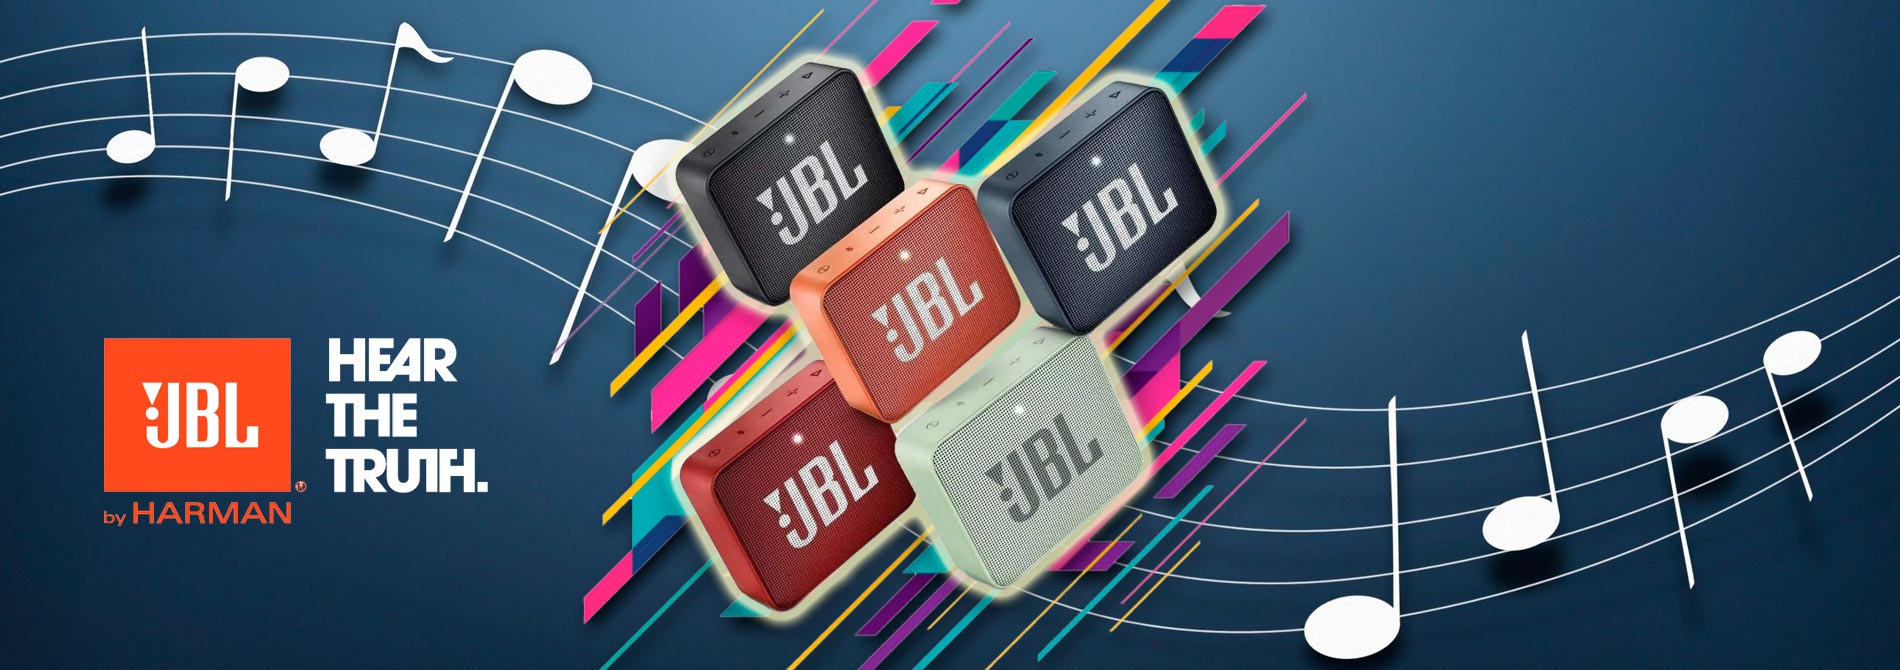 JBL უსადენო ბლუთუზ დინამიკები